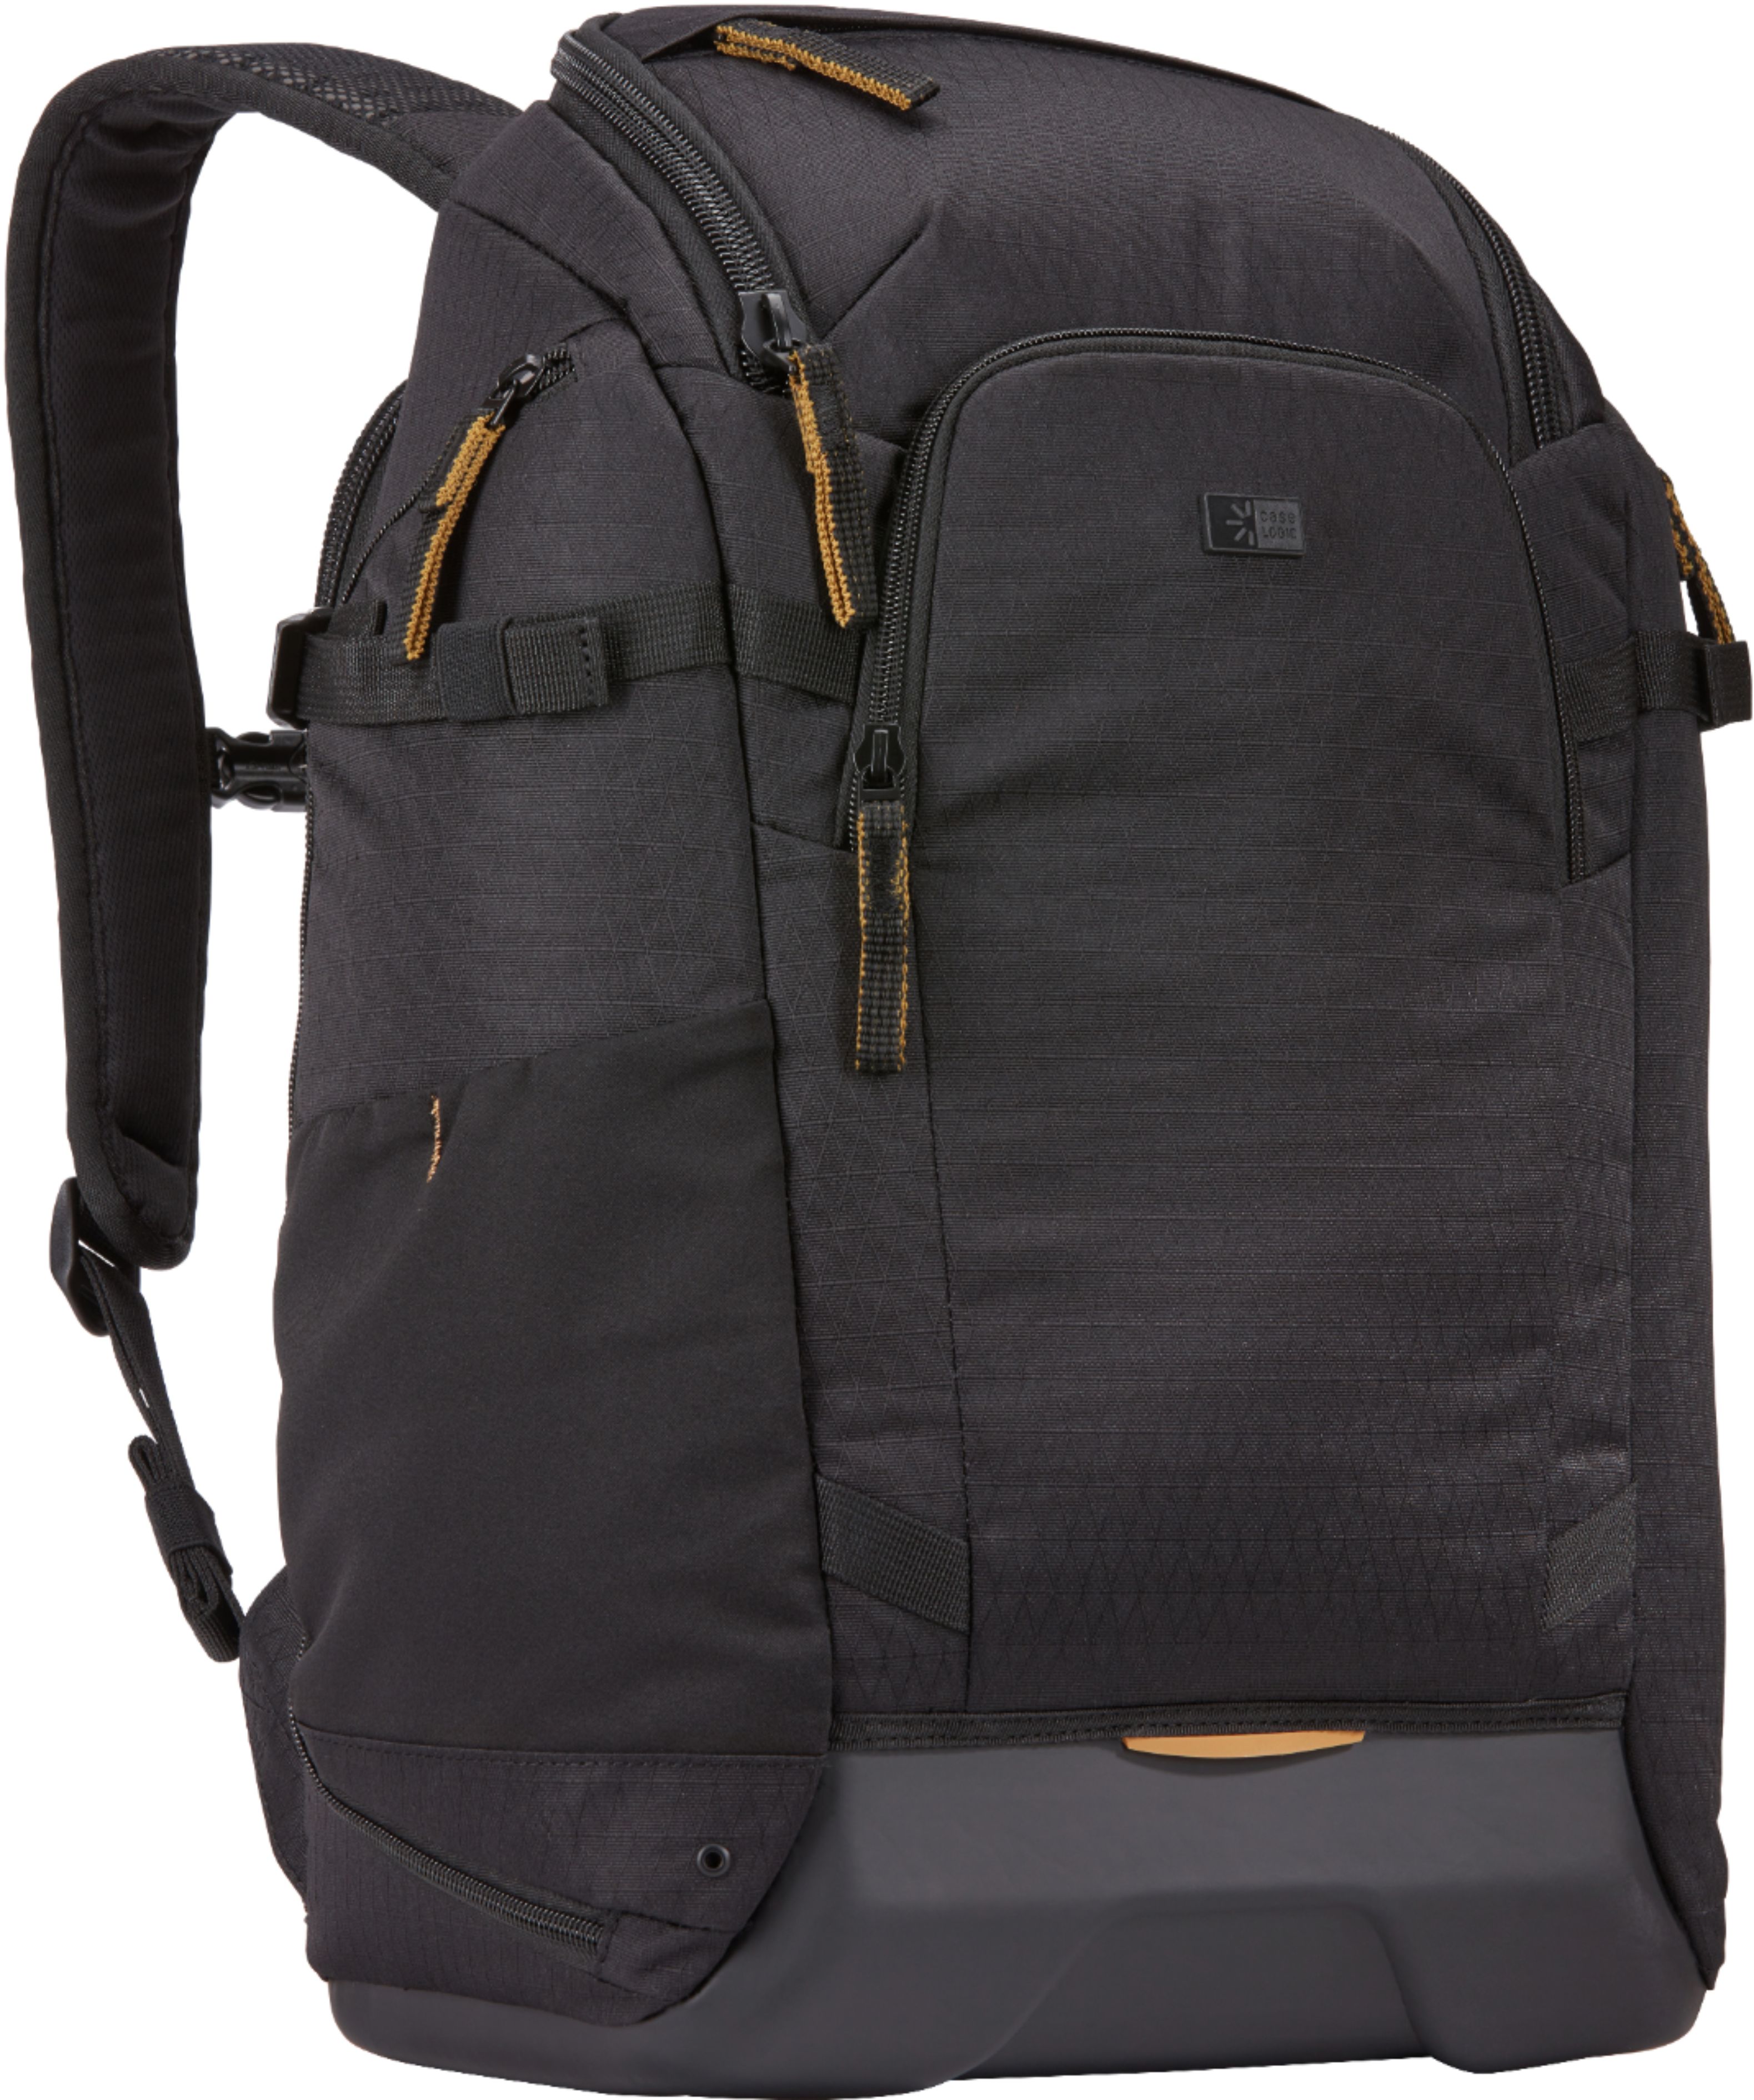 Left View: Peak Design - Everyday Backpack V2 20L - Charcoal